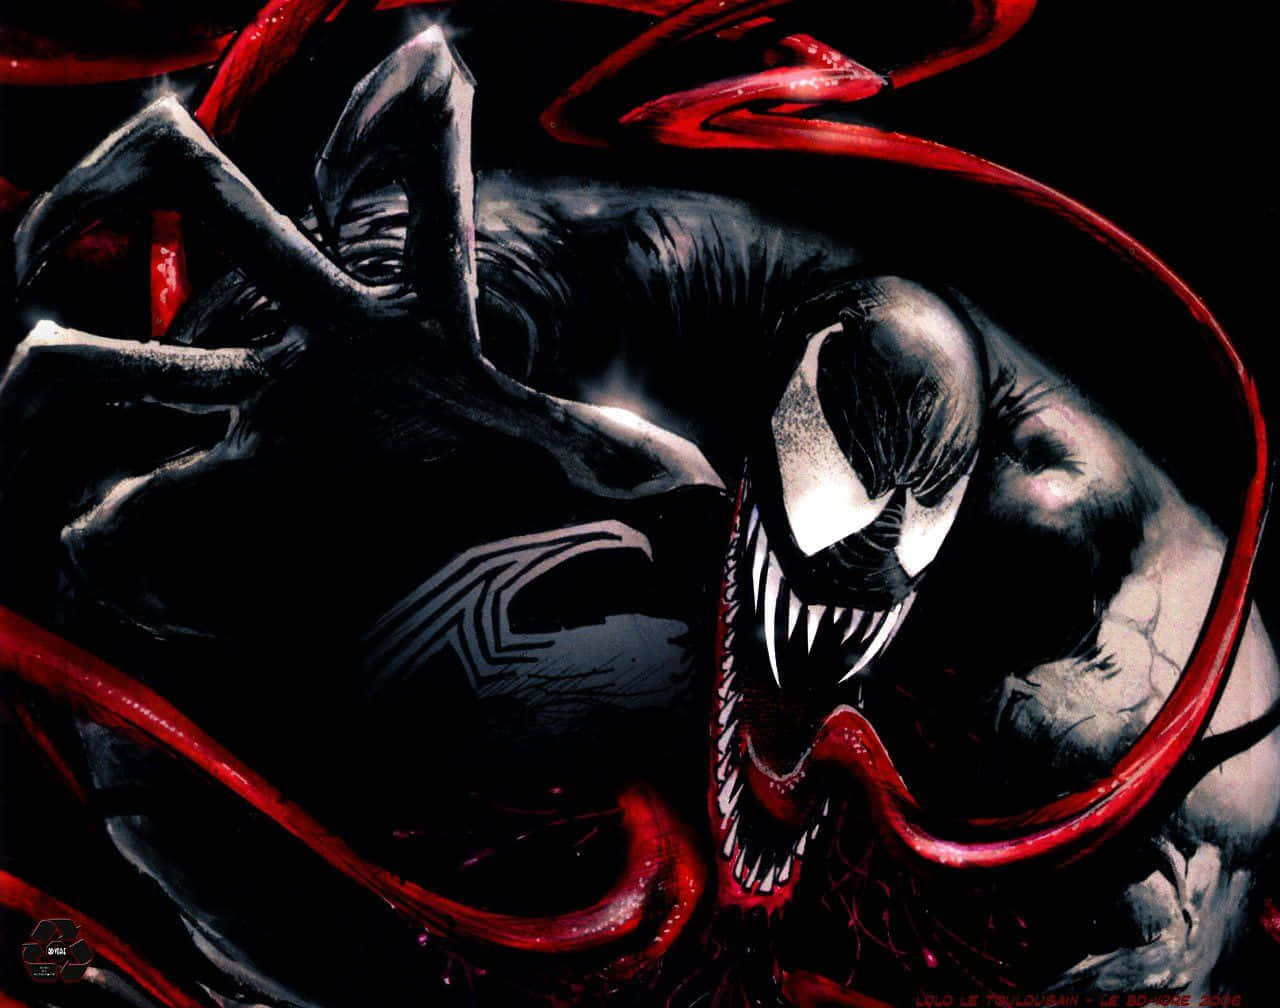 Fange øjet abstrakt afbildning af Venom Wallpaper